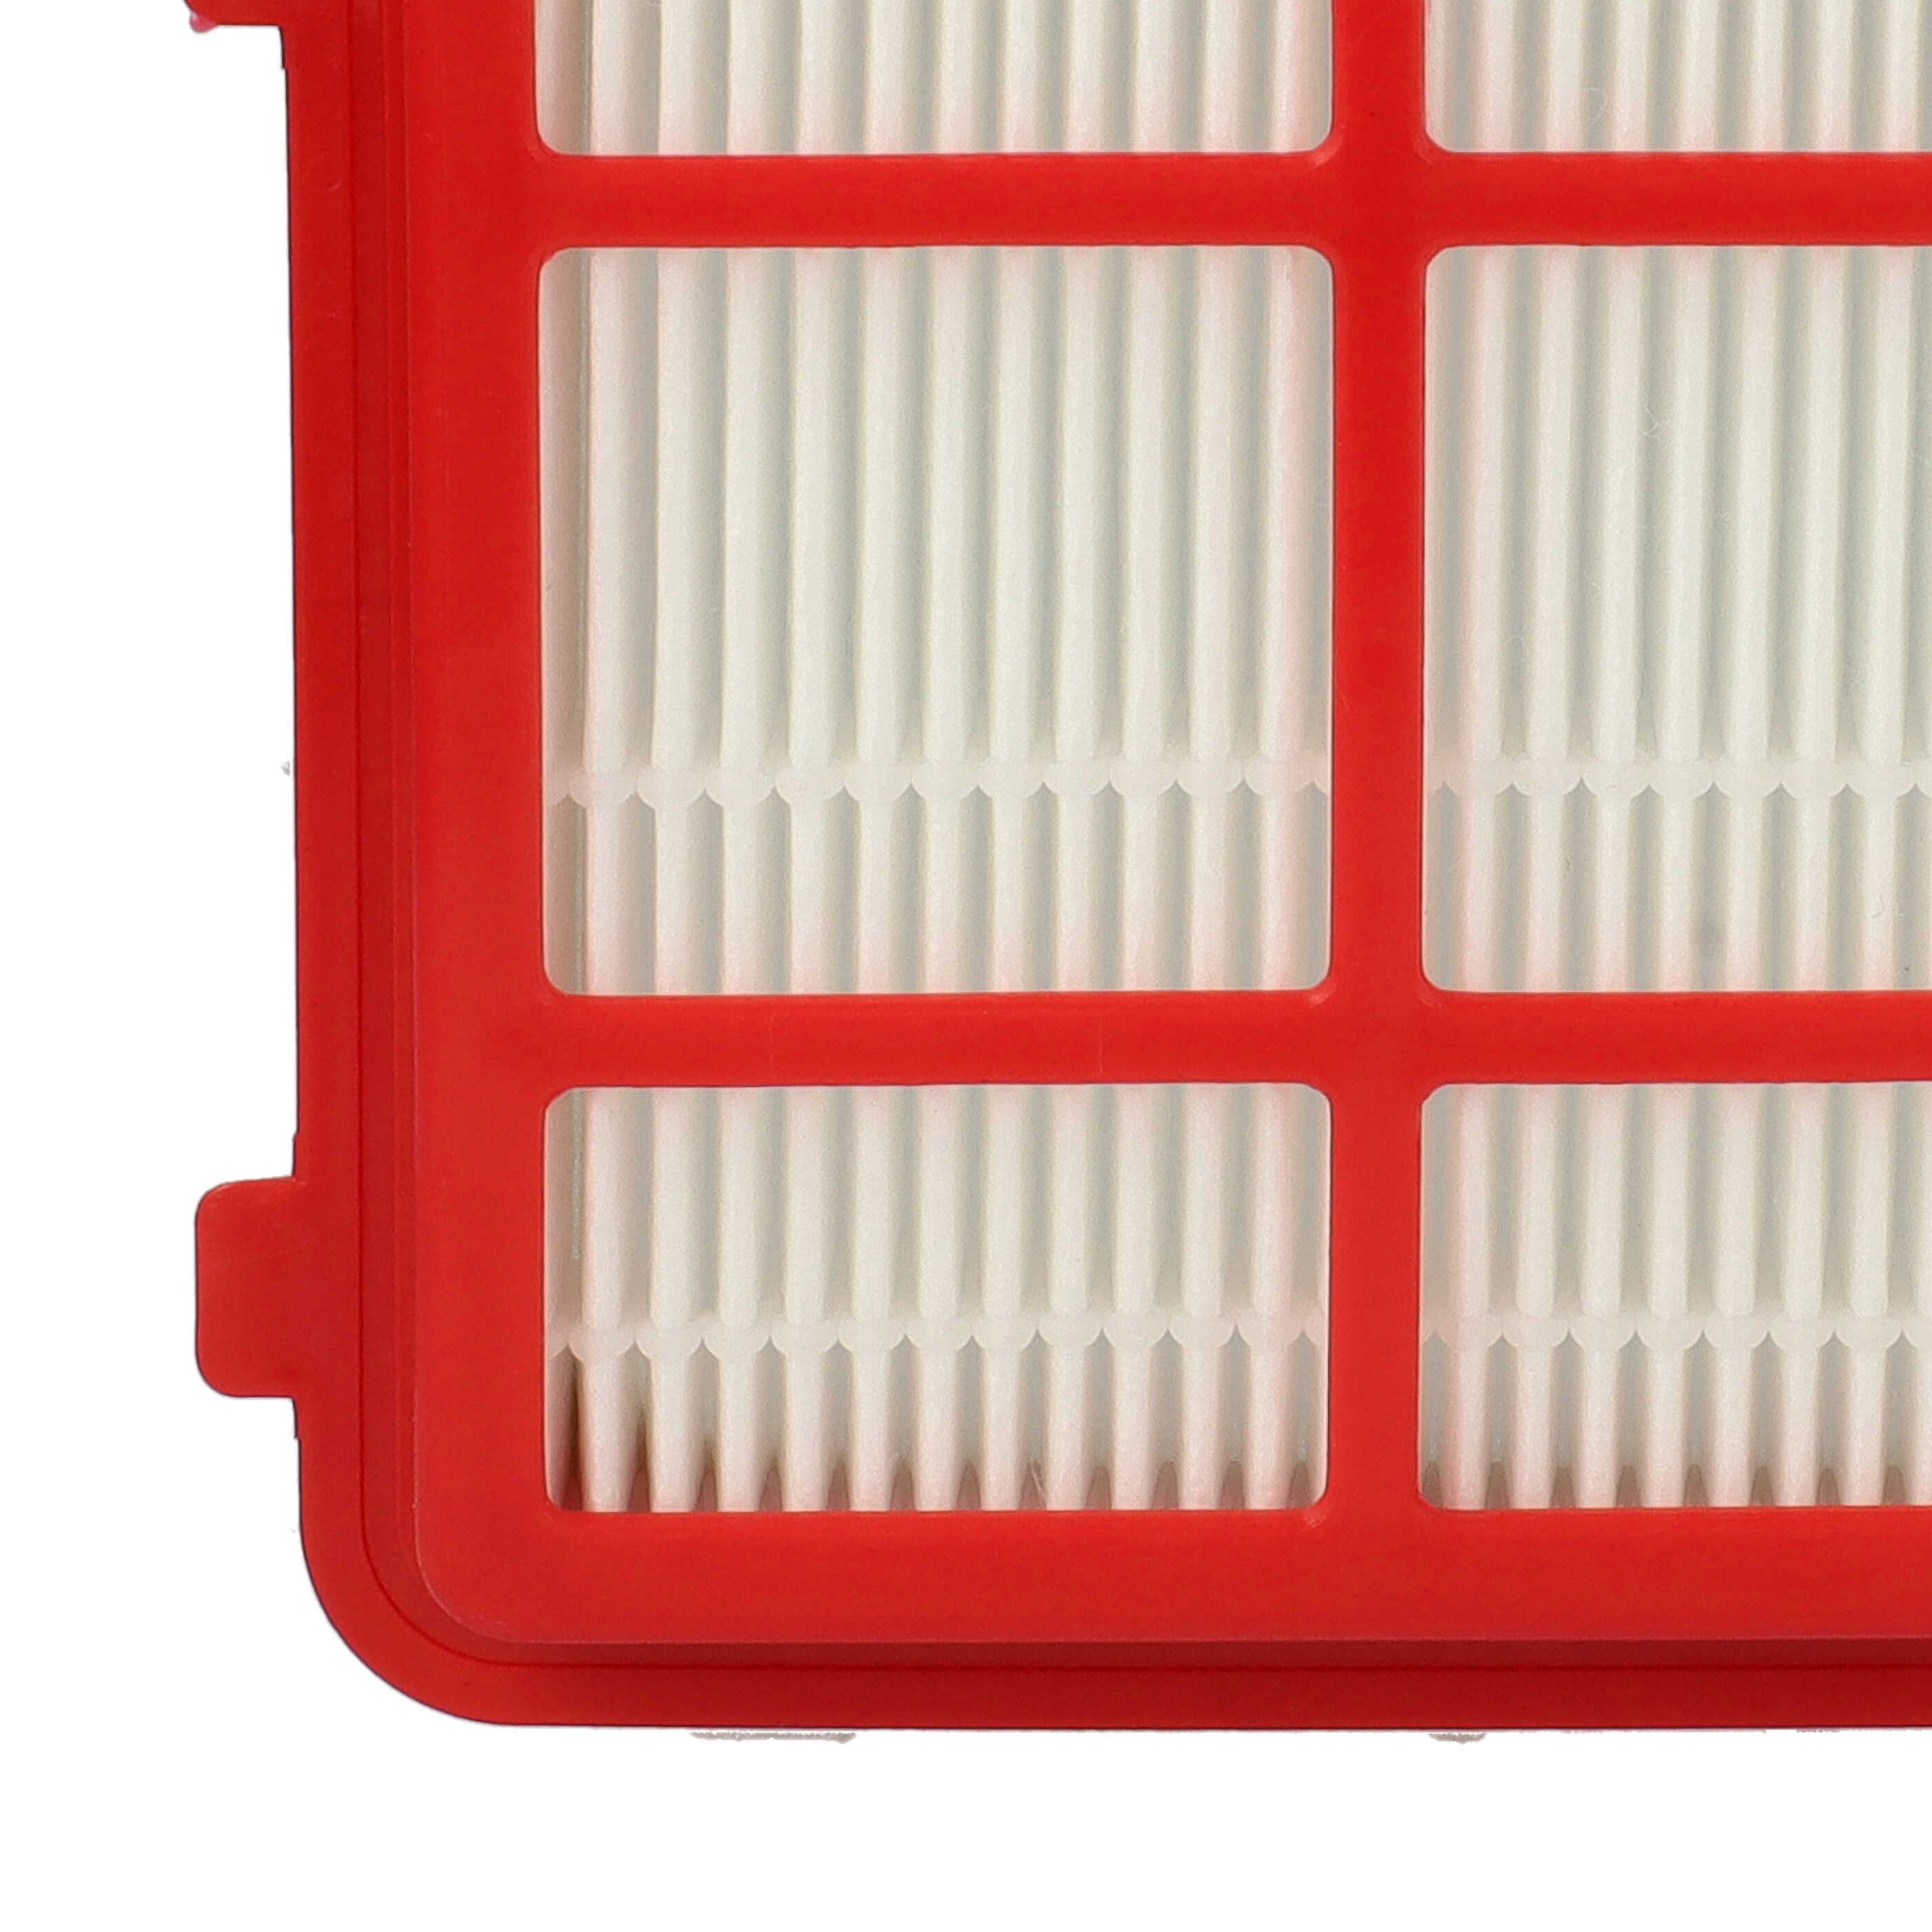 Filtro reemplaza 4055398137 para aspiradora - filtro Hepa blanco / rojo